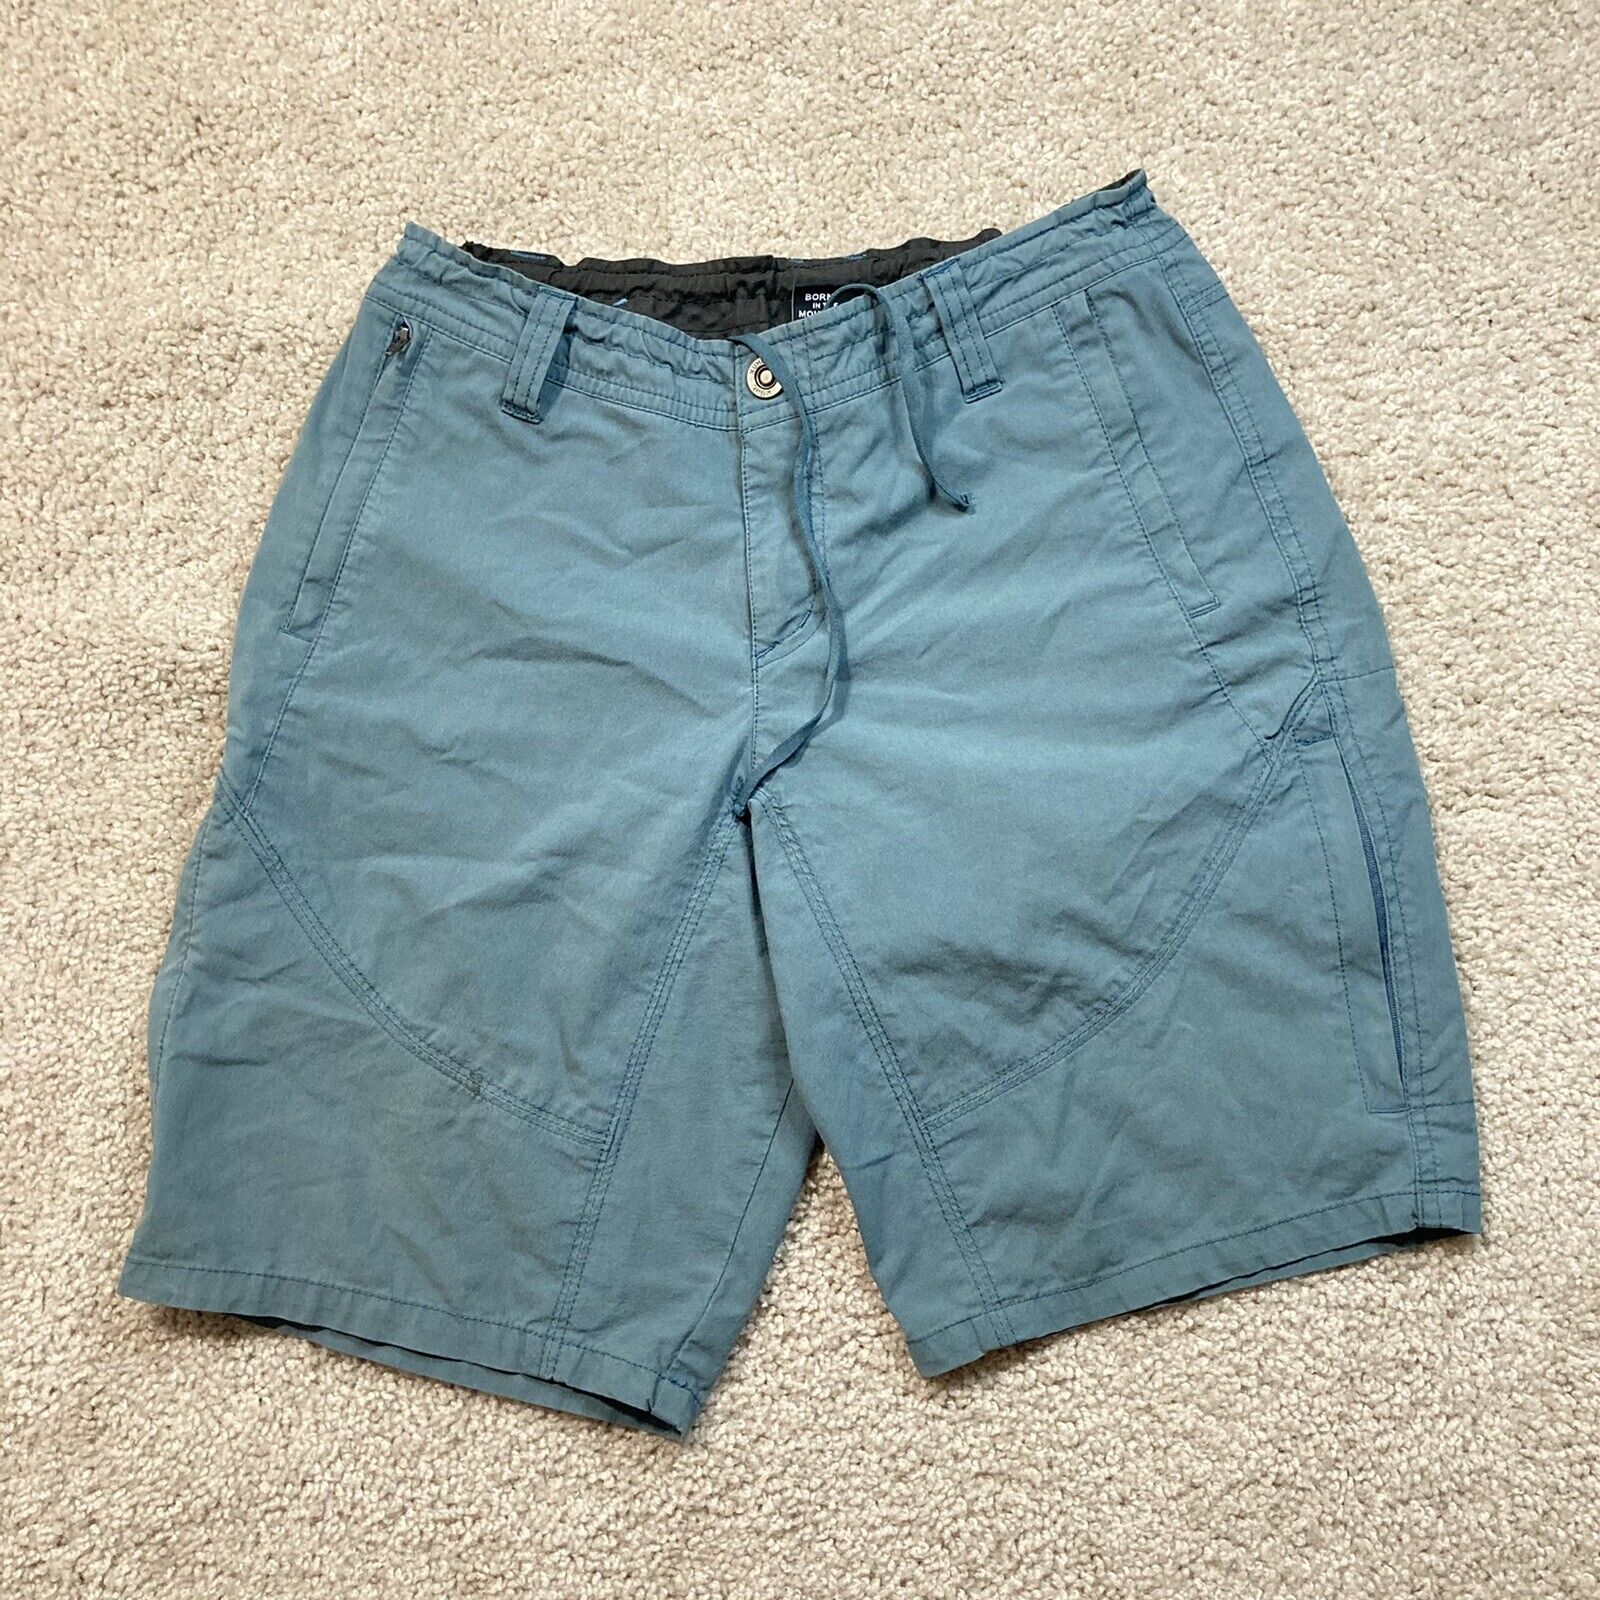 Kuhl Shorts San Francisco Mall Womens 6 Adult Blue Chino Activewear Active O Hiking Max 74% OFF